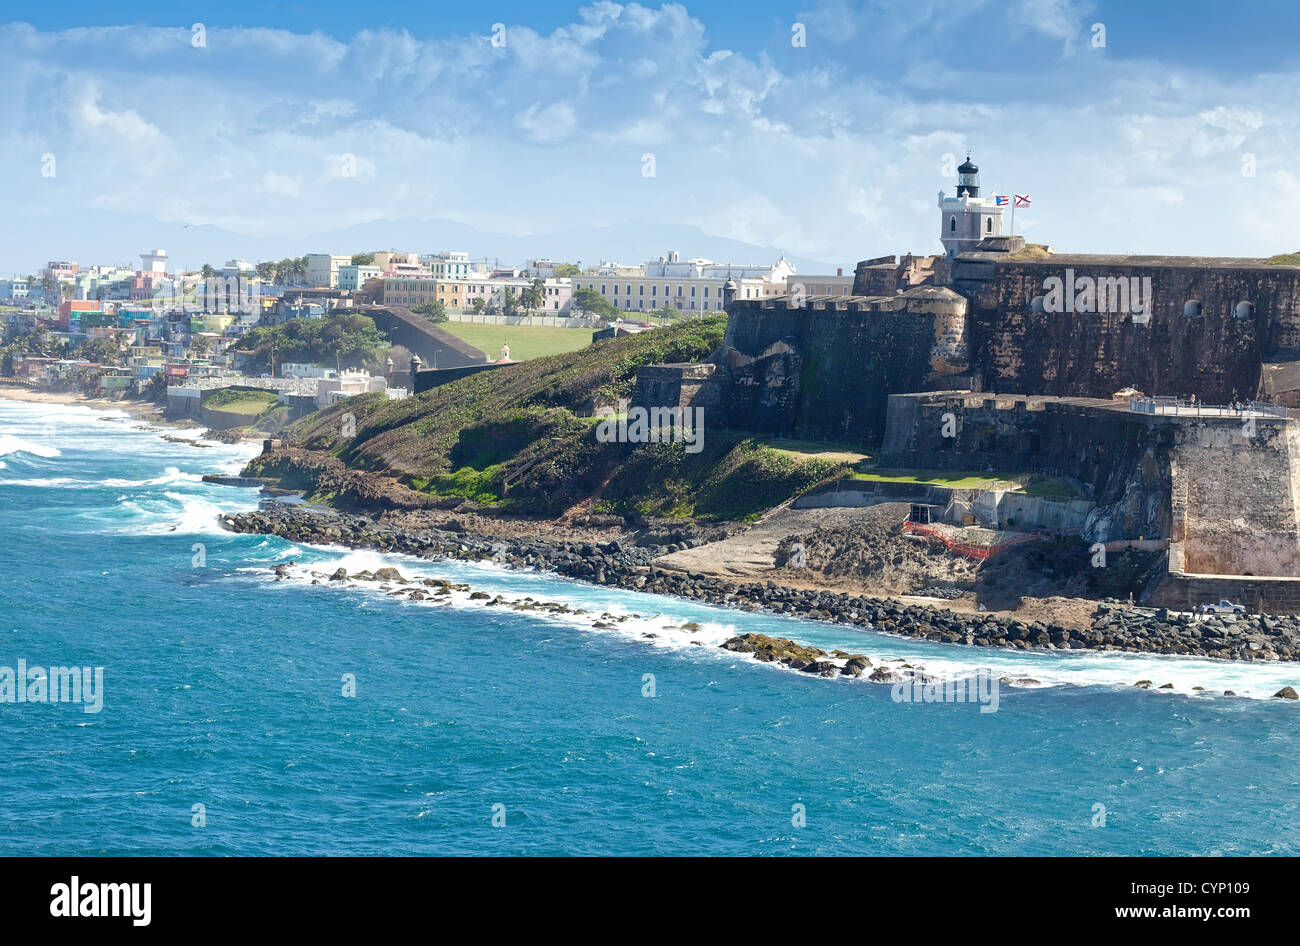 Coastline of San Juan, Puerto Rico and the ancient El Morro Castle. Stock Photo